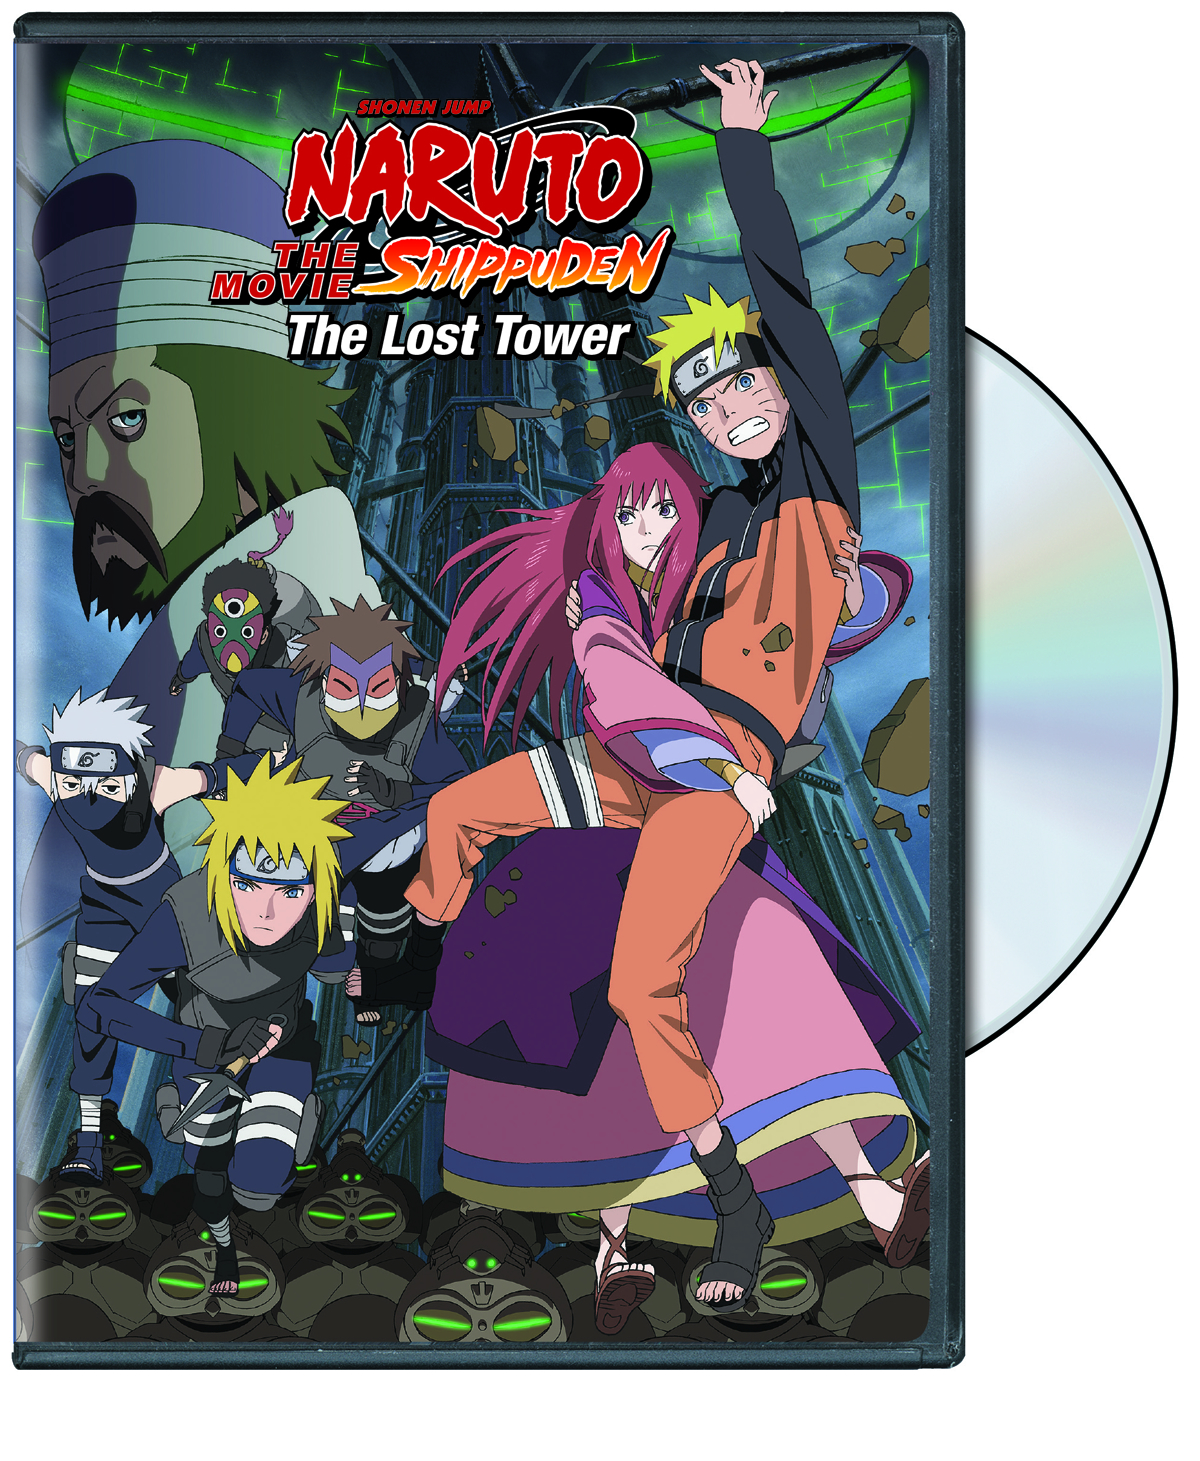 NARUTO SHIPPŪDEN THE MOVIE The Lost Tower Original Soundtrack